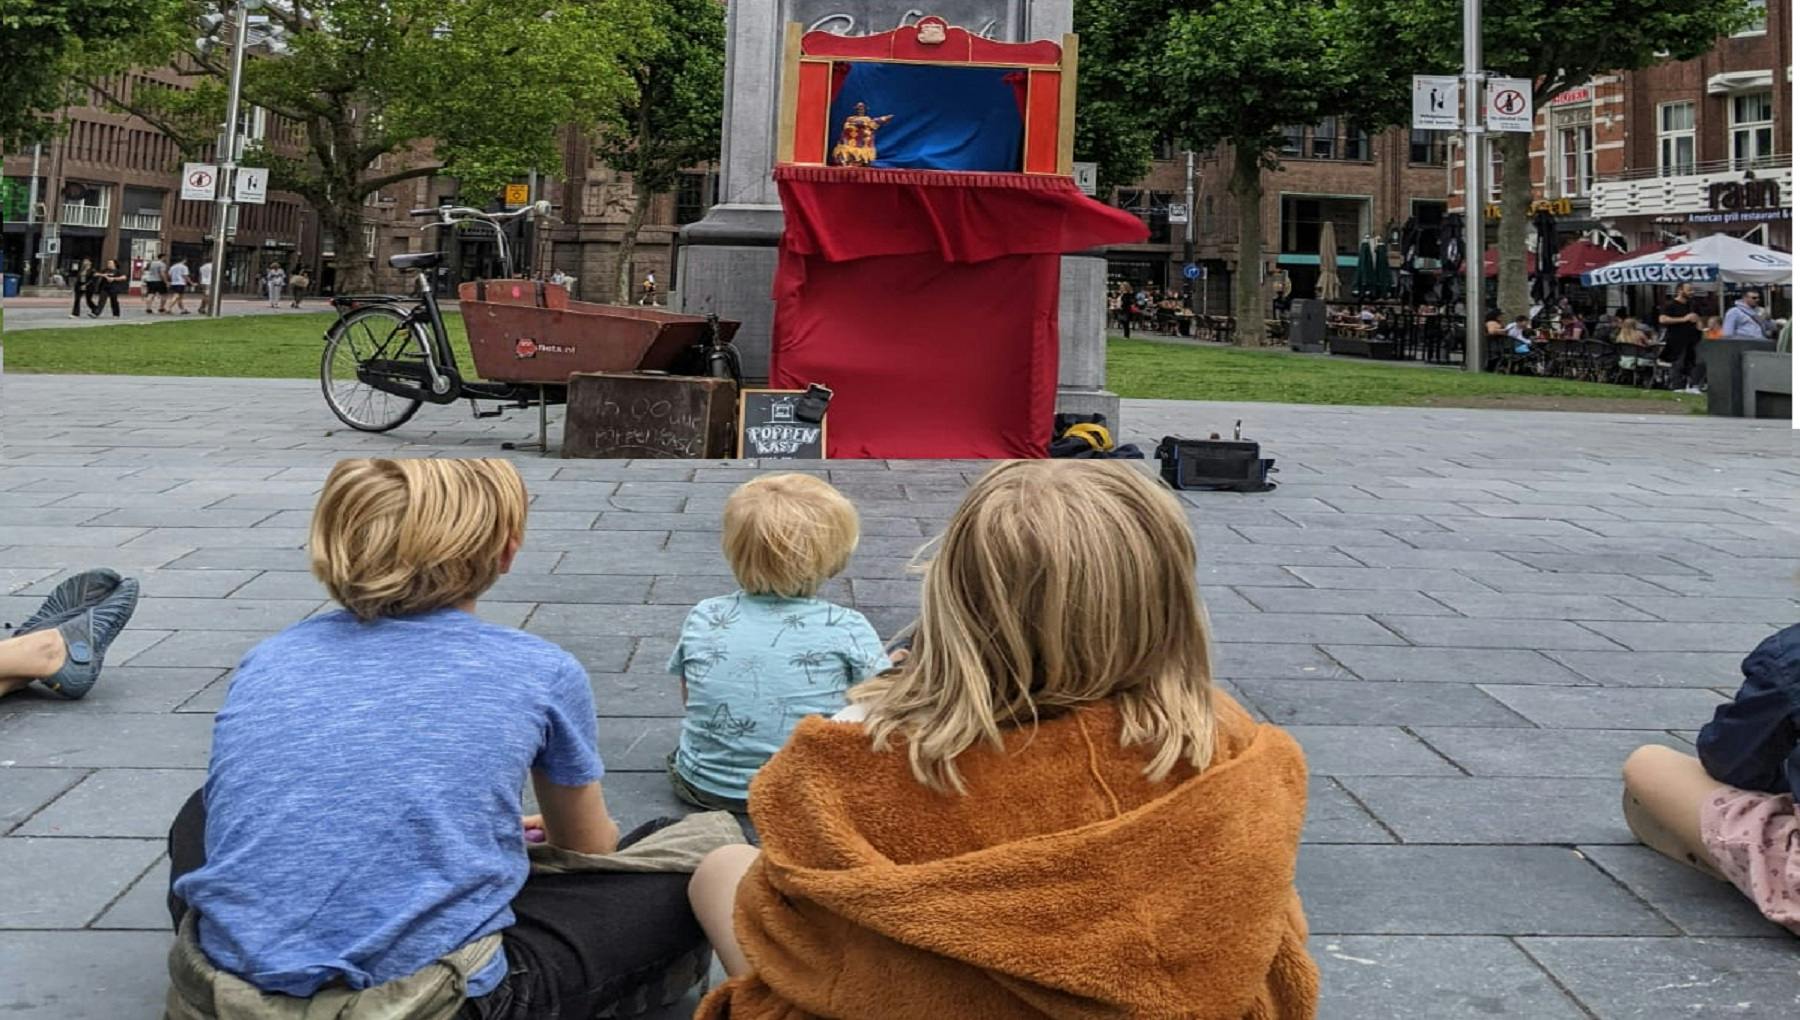 Punch & Judy puppet show at Rembrandtplein